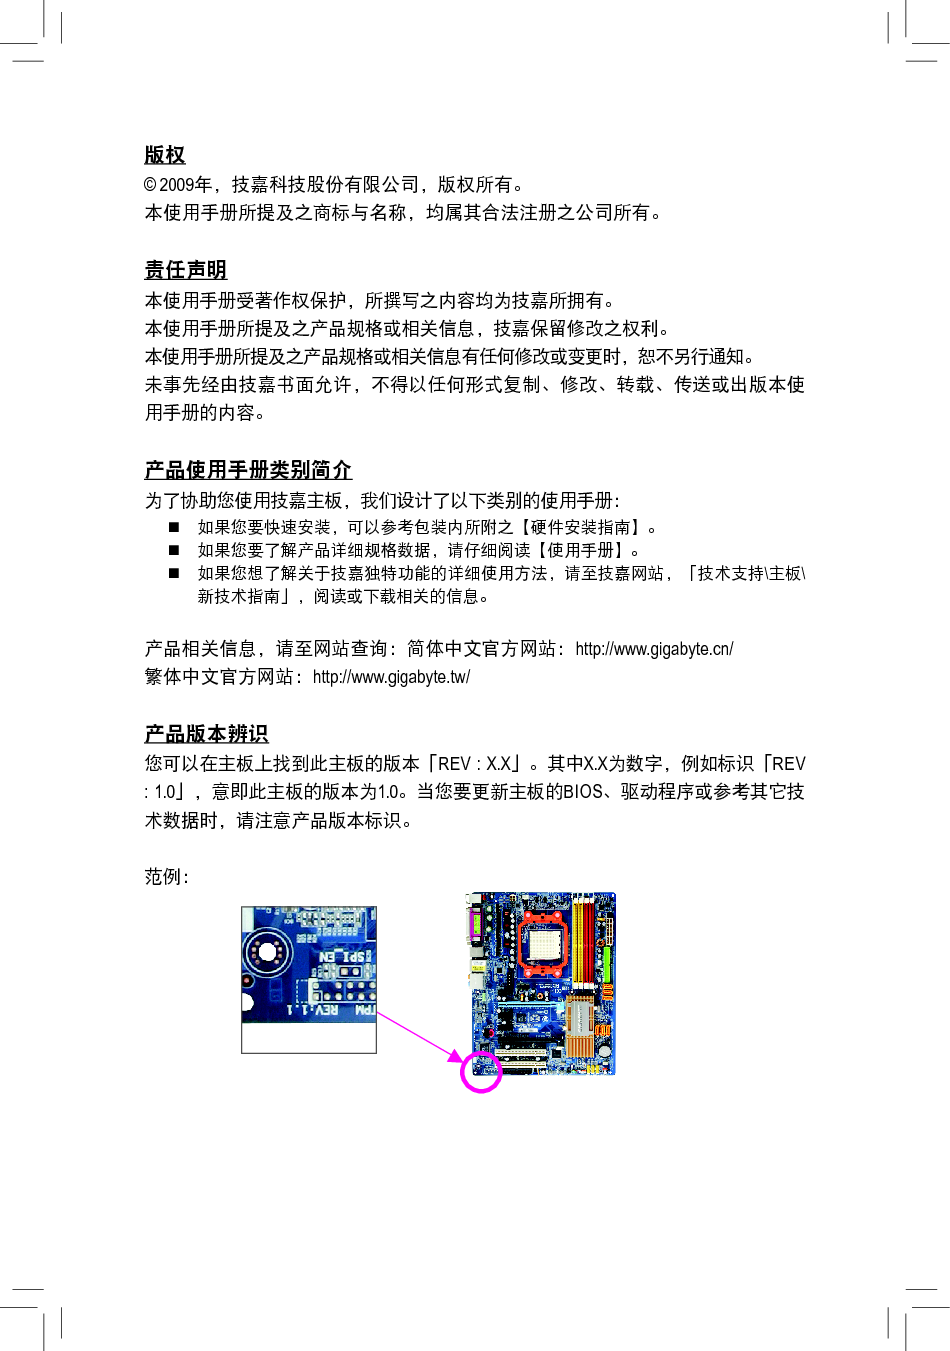 技嘉 Gigabyte GA-MA770T-UD3 1001版 使用手册 第2页